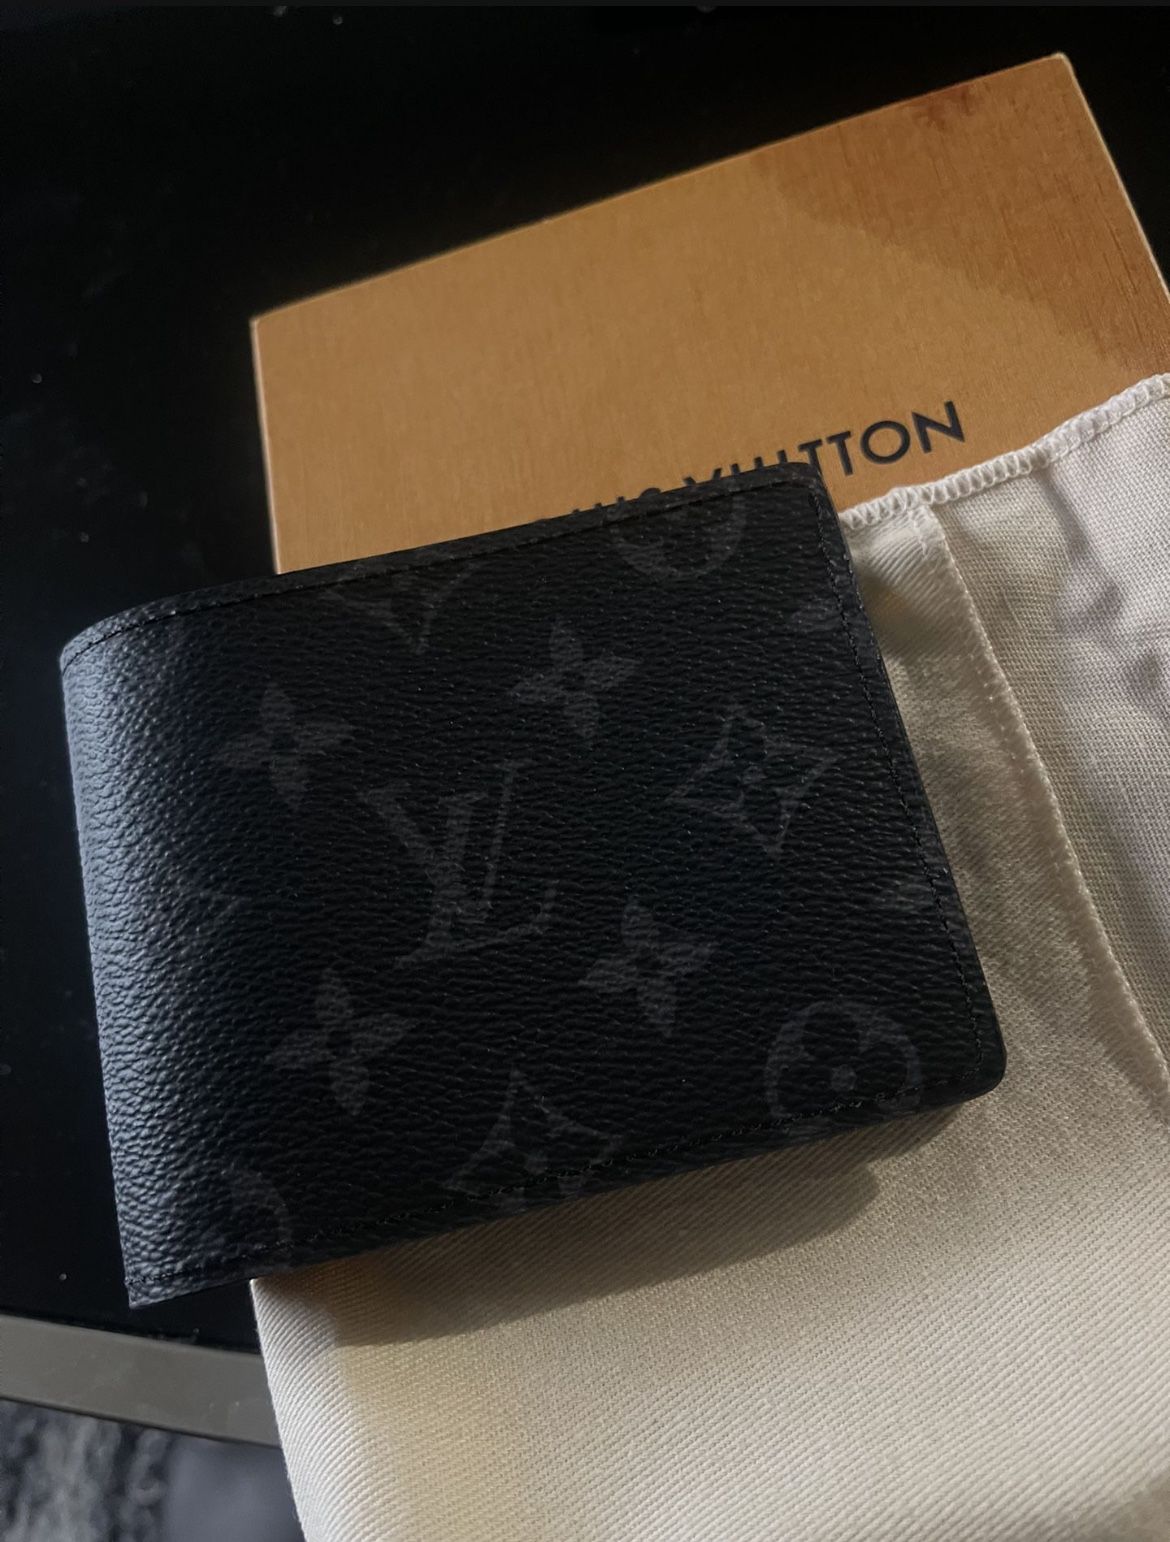 Mens Louis Vuitton Wallet For Sale. Authentic. Have Receipt for